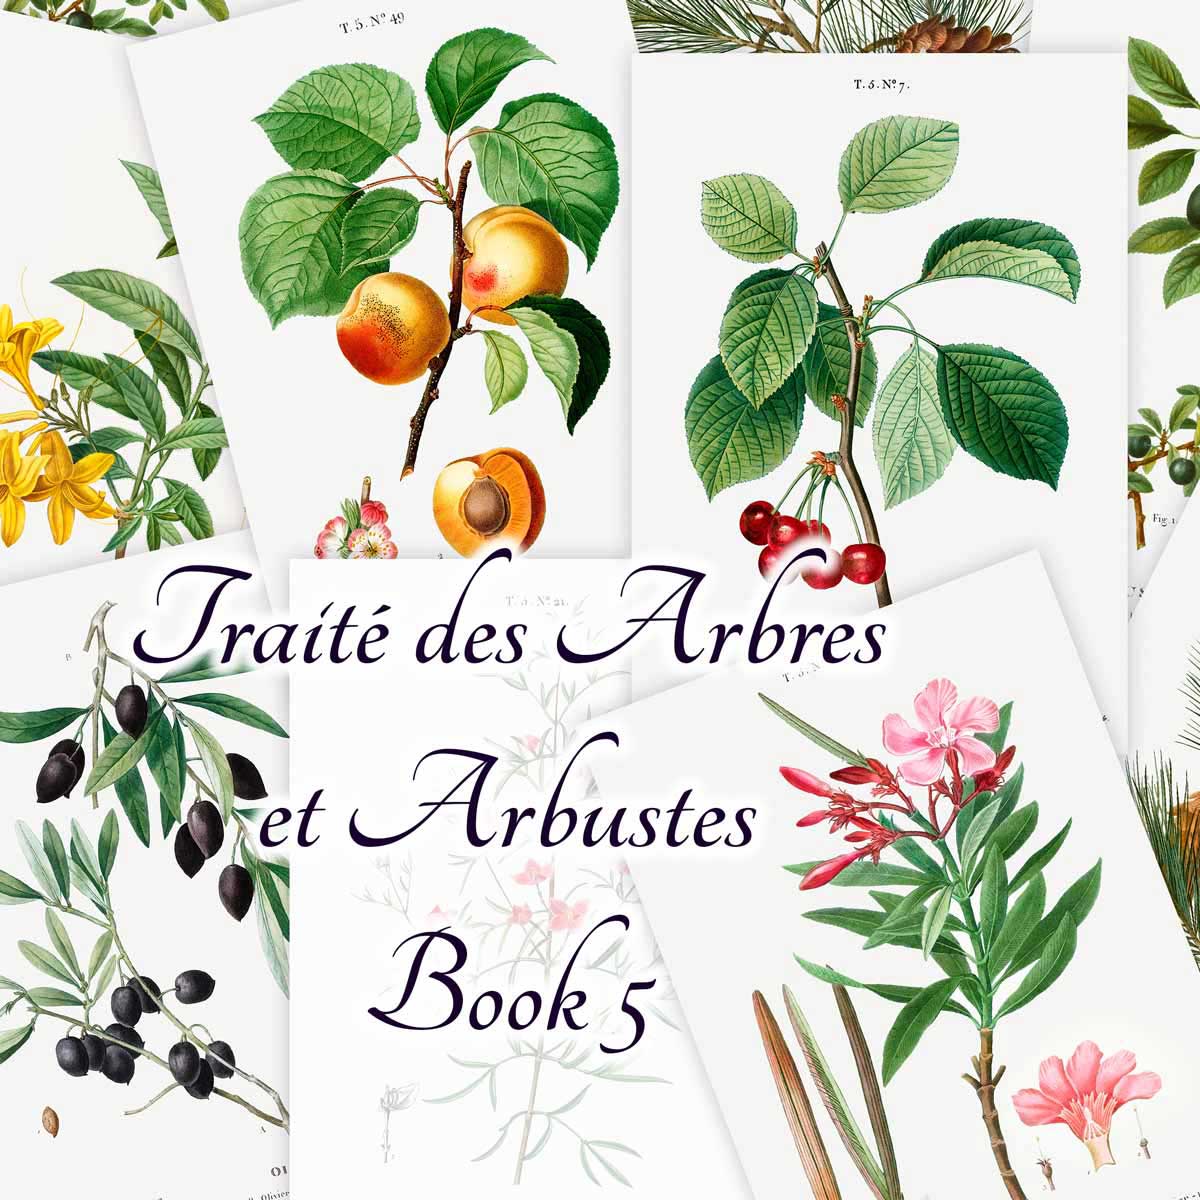 Traité des Arbres et Arbustes (Book 5)